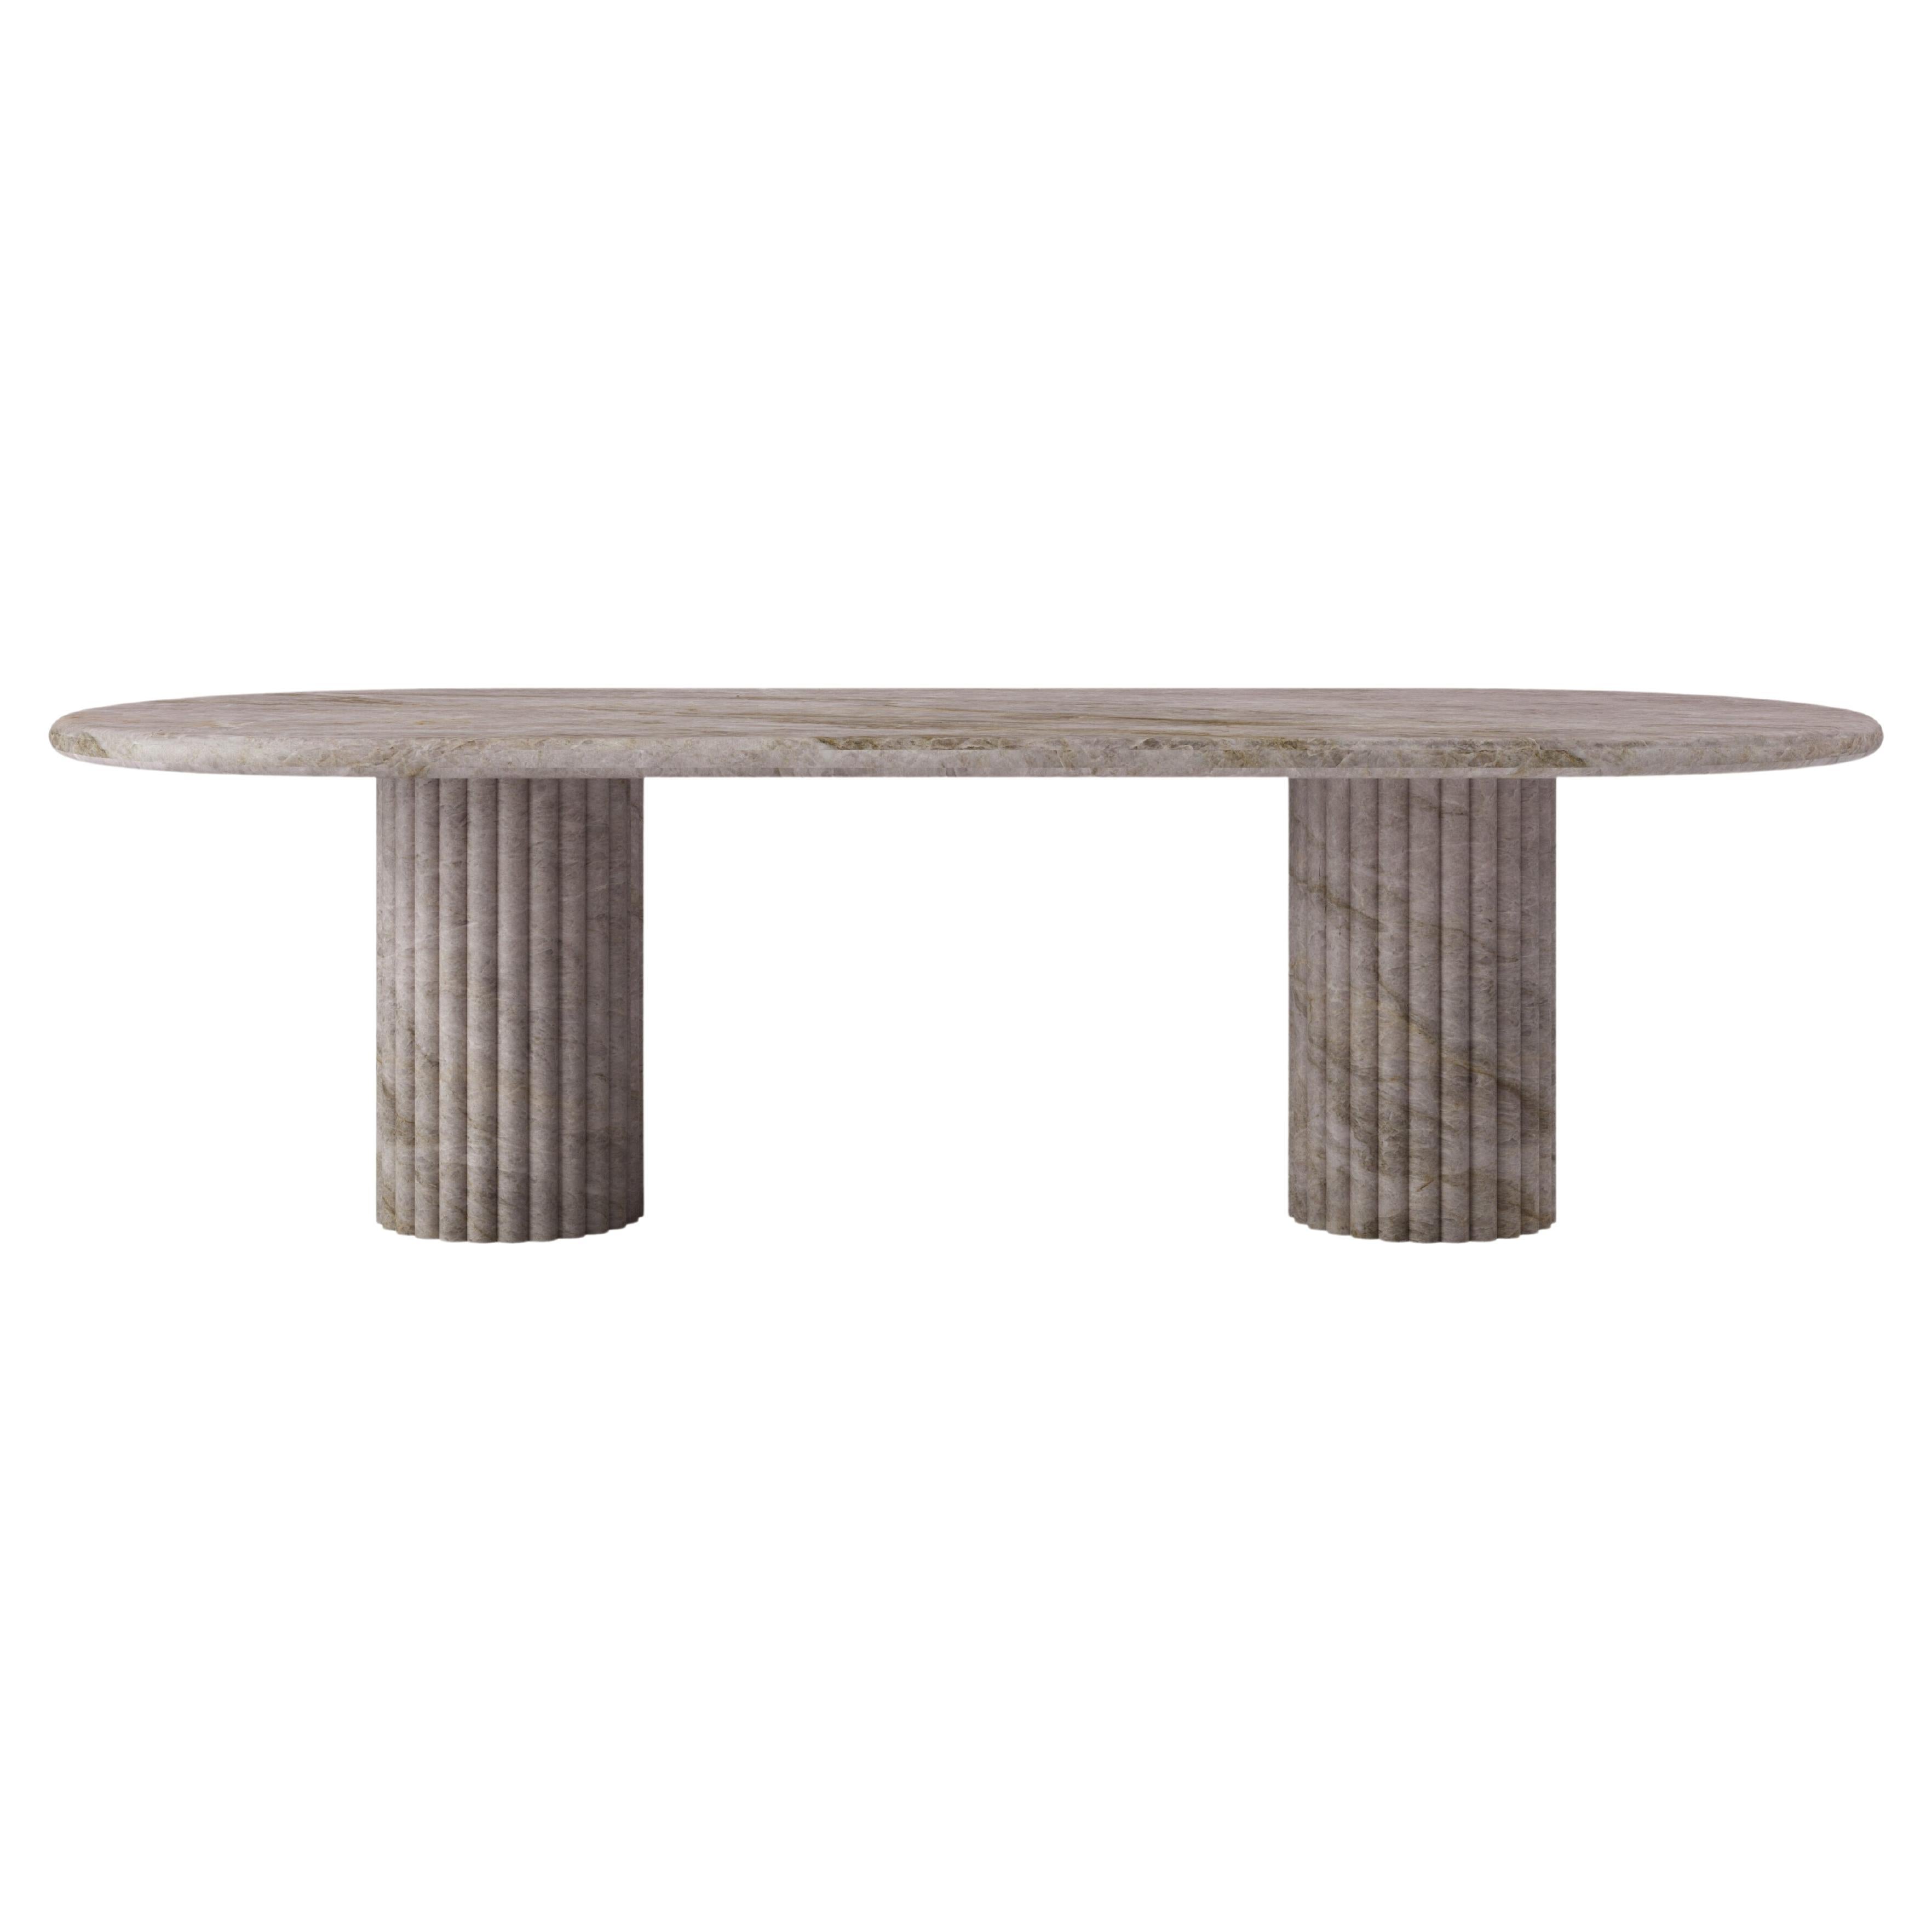 FORM(LA) Fluta Oval Dining Table 118”L x 48”W x 30”H Taj Mahal Quartzite